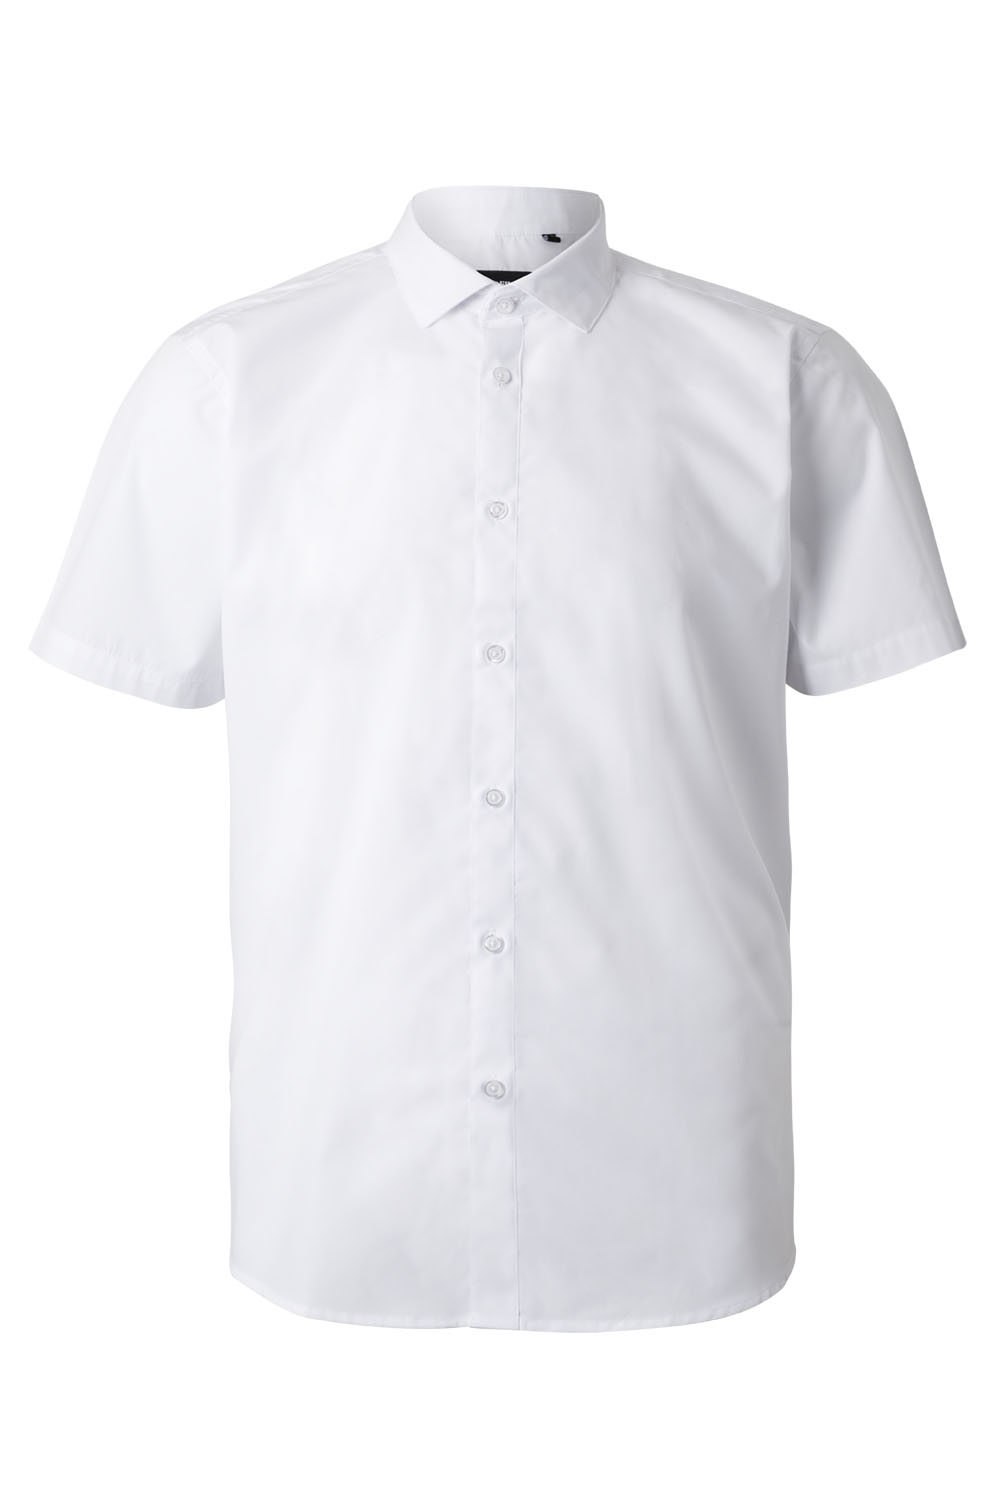 E-shop VELILLA GROUP EUROPE S.L.U. Pánska čašnícka košeľa krátky rukáv- biela M